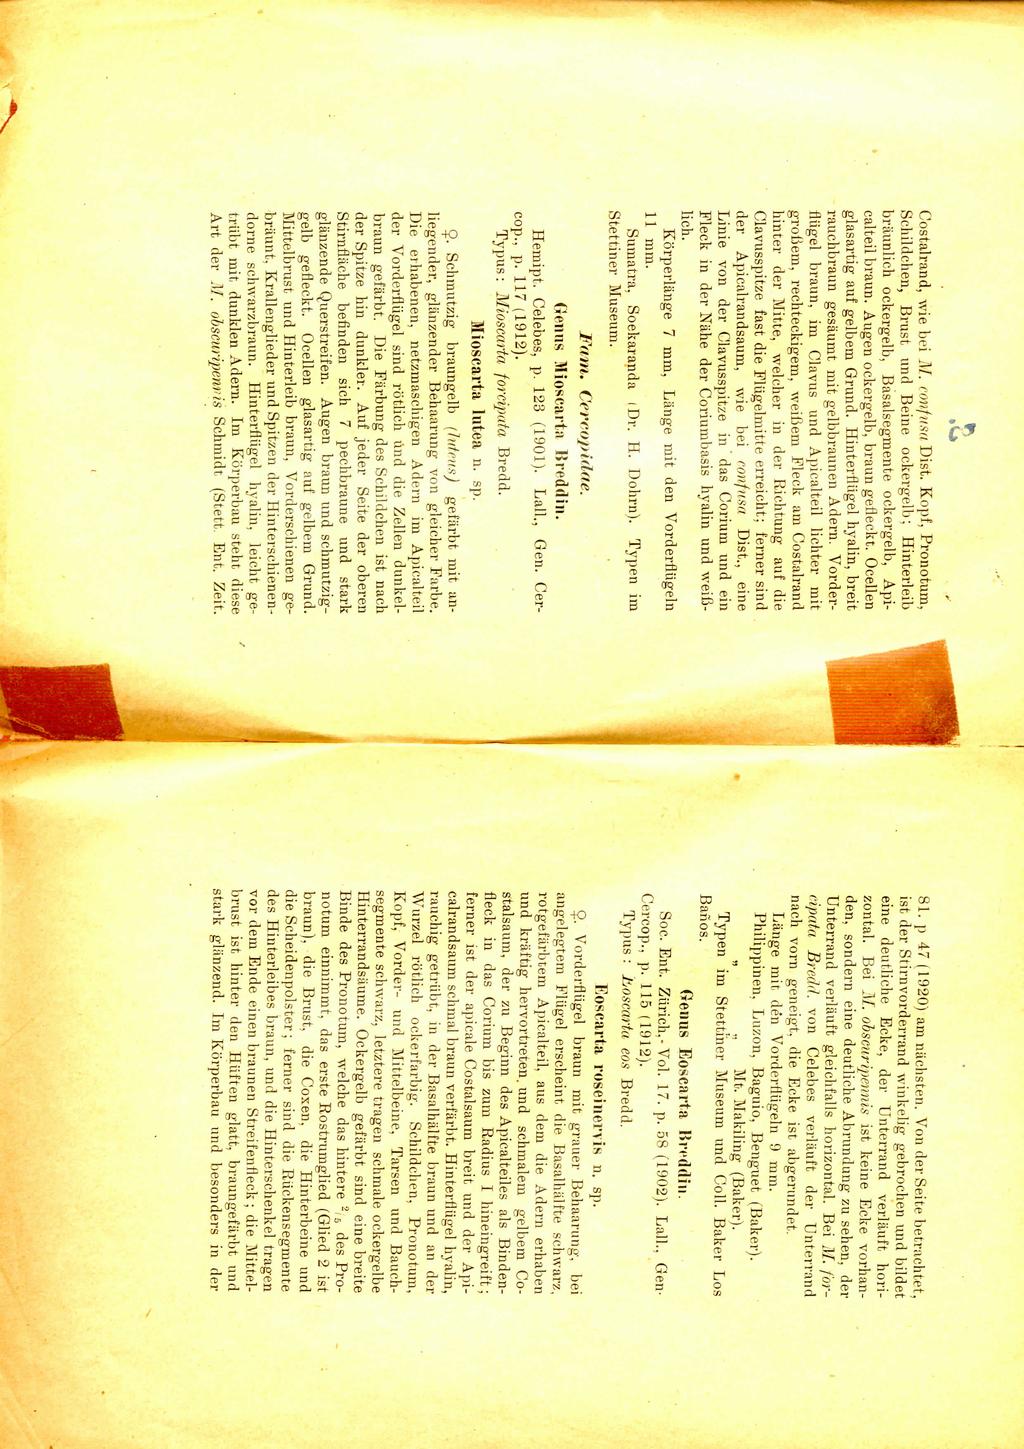 81. p 47 (1920) am nachsten. Von der Seite betrachtet, ist der Stirnvorderrand winkelig gebrochen und bildet eine deutliche Ecke, der Unterrand verlauft horizontal. Bei J\I.